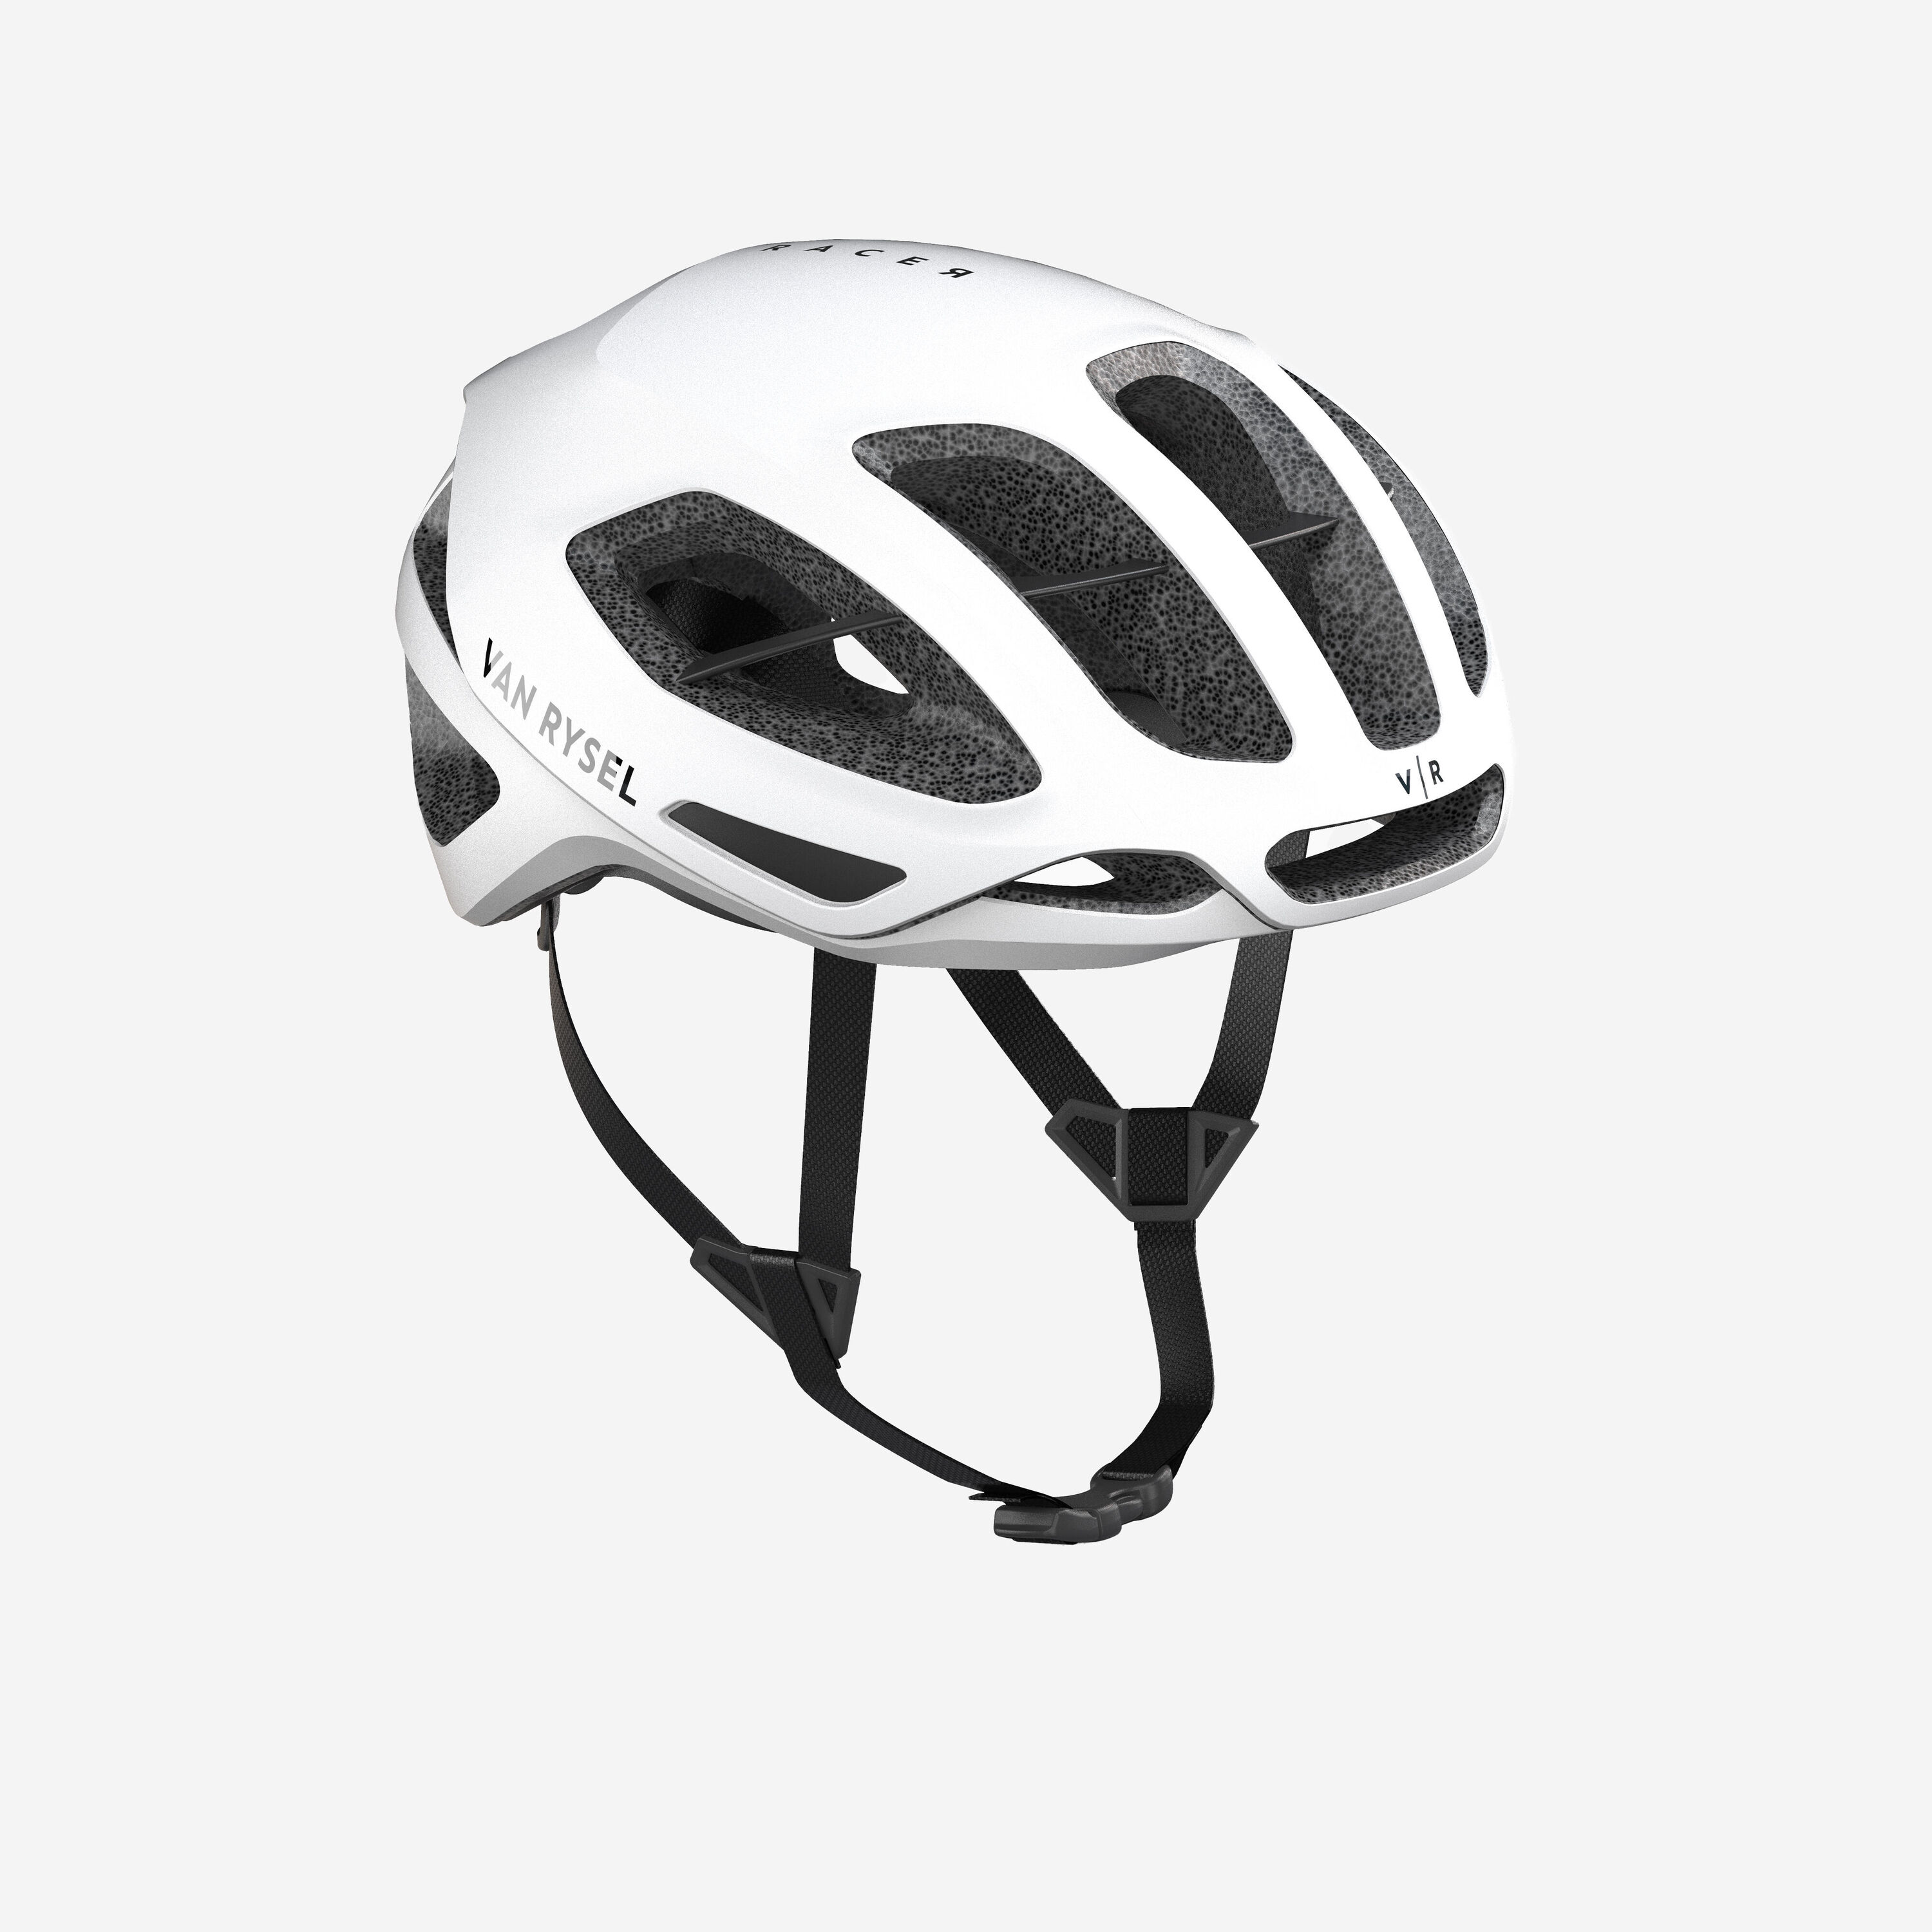 VAN RYSEL Road Bike Helmet RCR MIPS - White